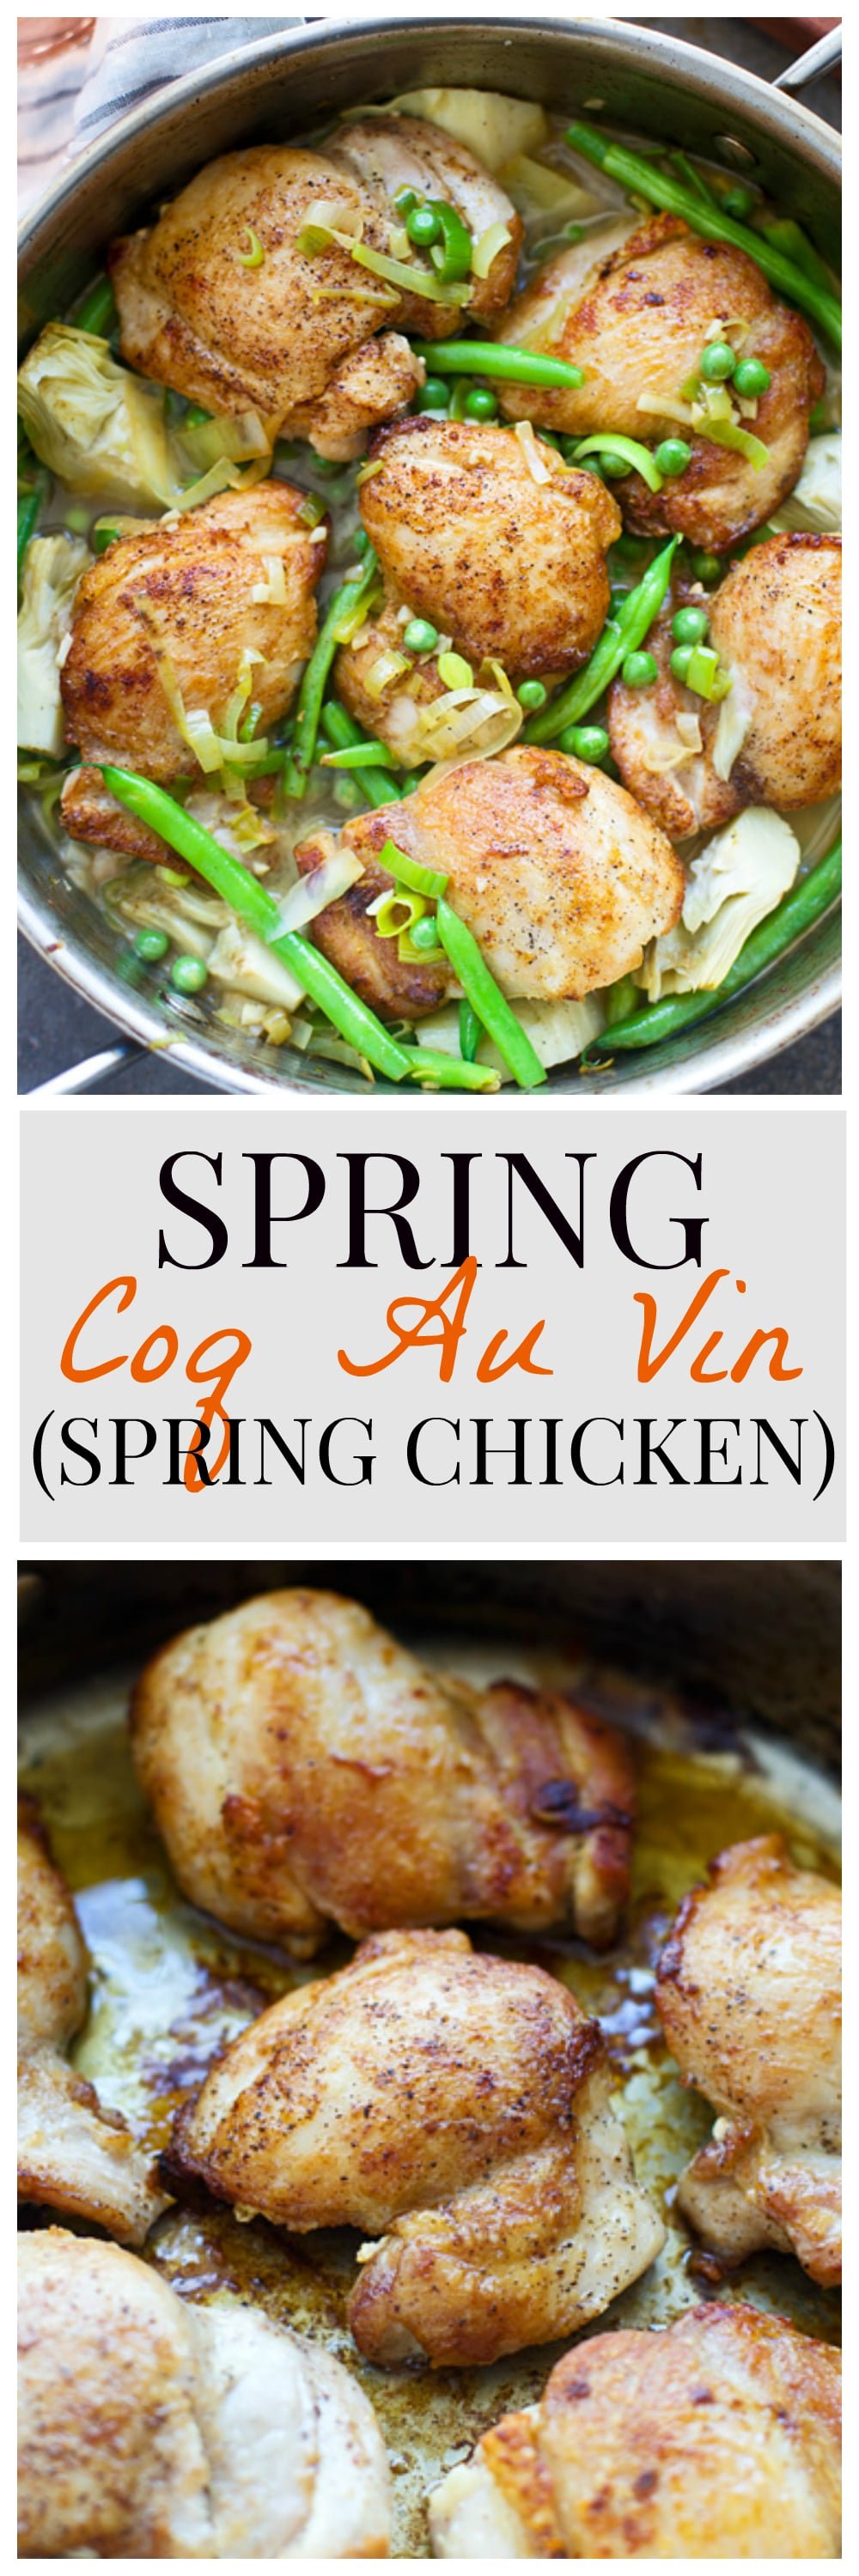 Spring Coq Au Vin (Spring Chicken)